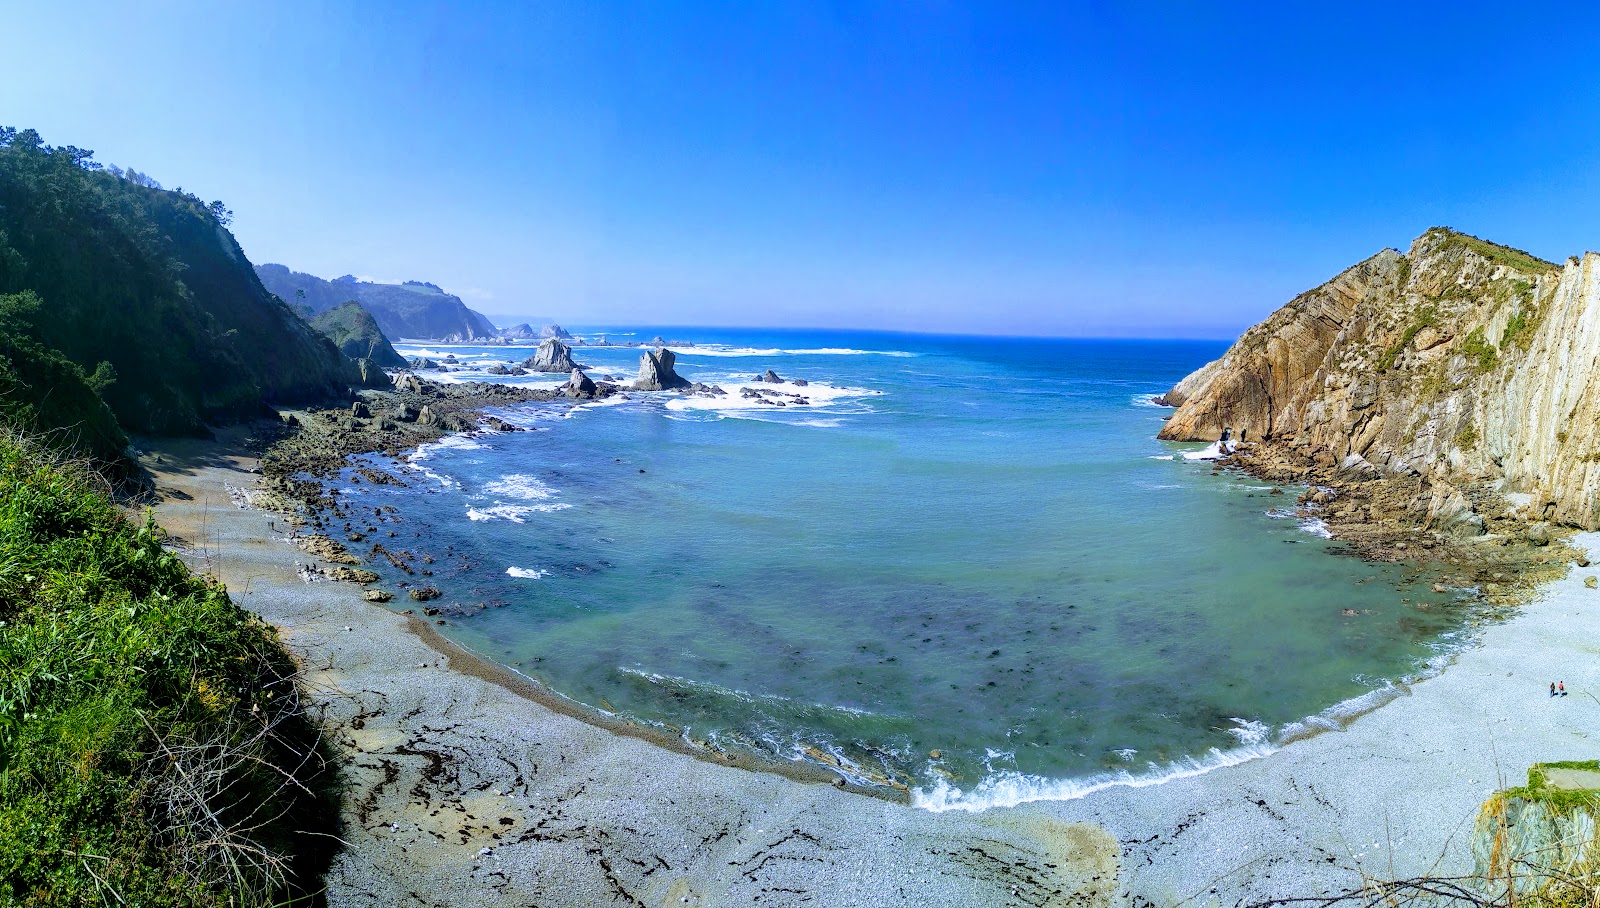 Fotografija Playa del Silencio nahaja se v naravnem okolju